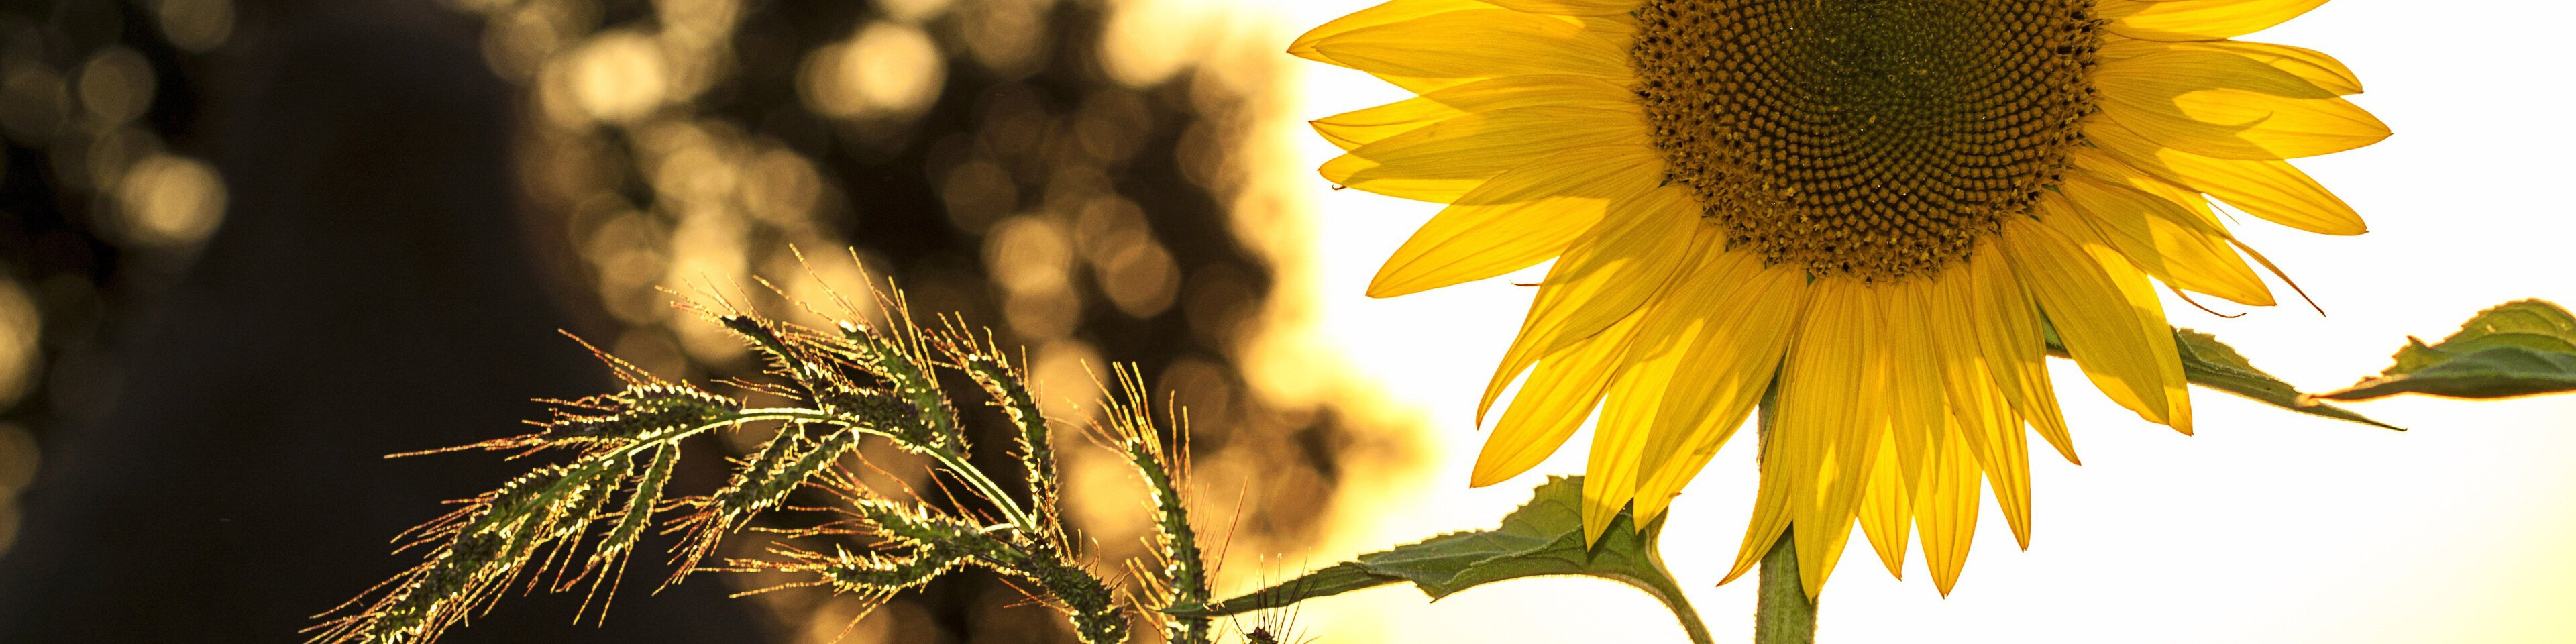 Sonnenblume | © Bild von Mircea Ploscar auf Pixabay